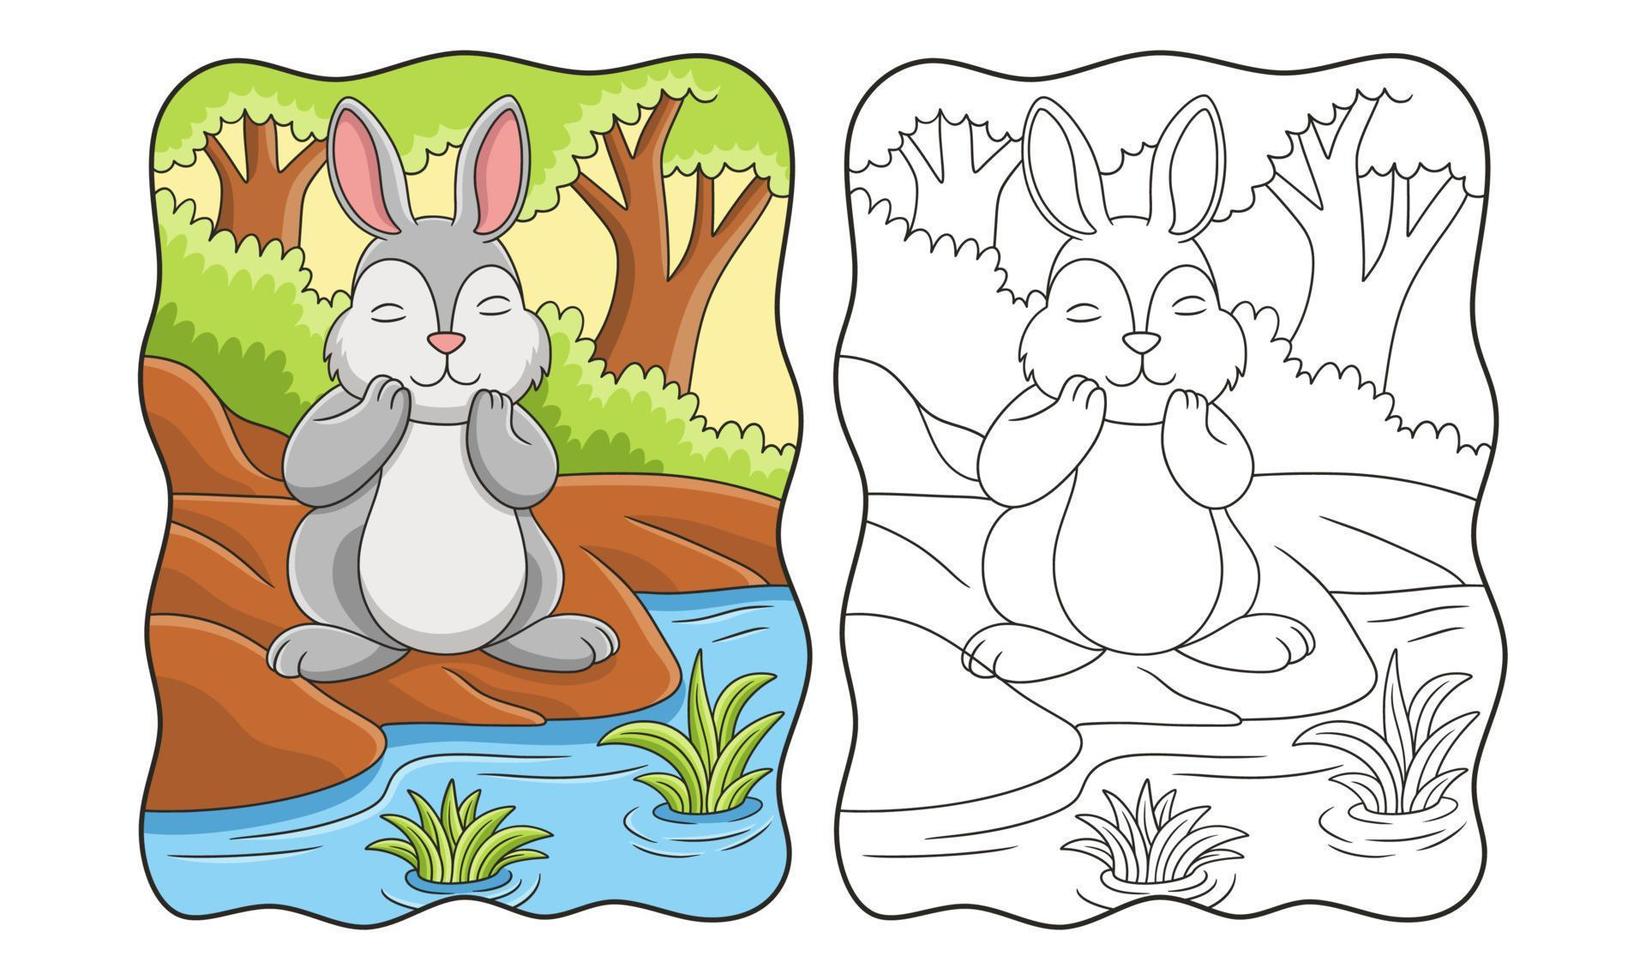 fumetto illustrazione coniglio sta respirando aria fresca dal fiume nel mezzo del libro foresta o pagina per i bambini vettore